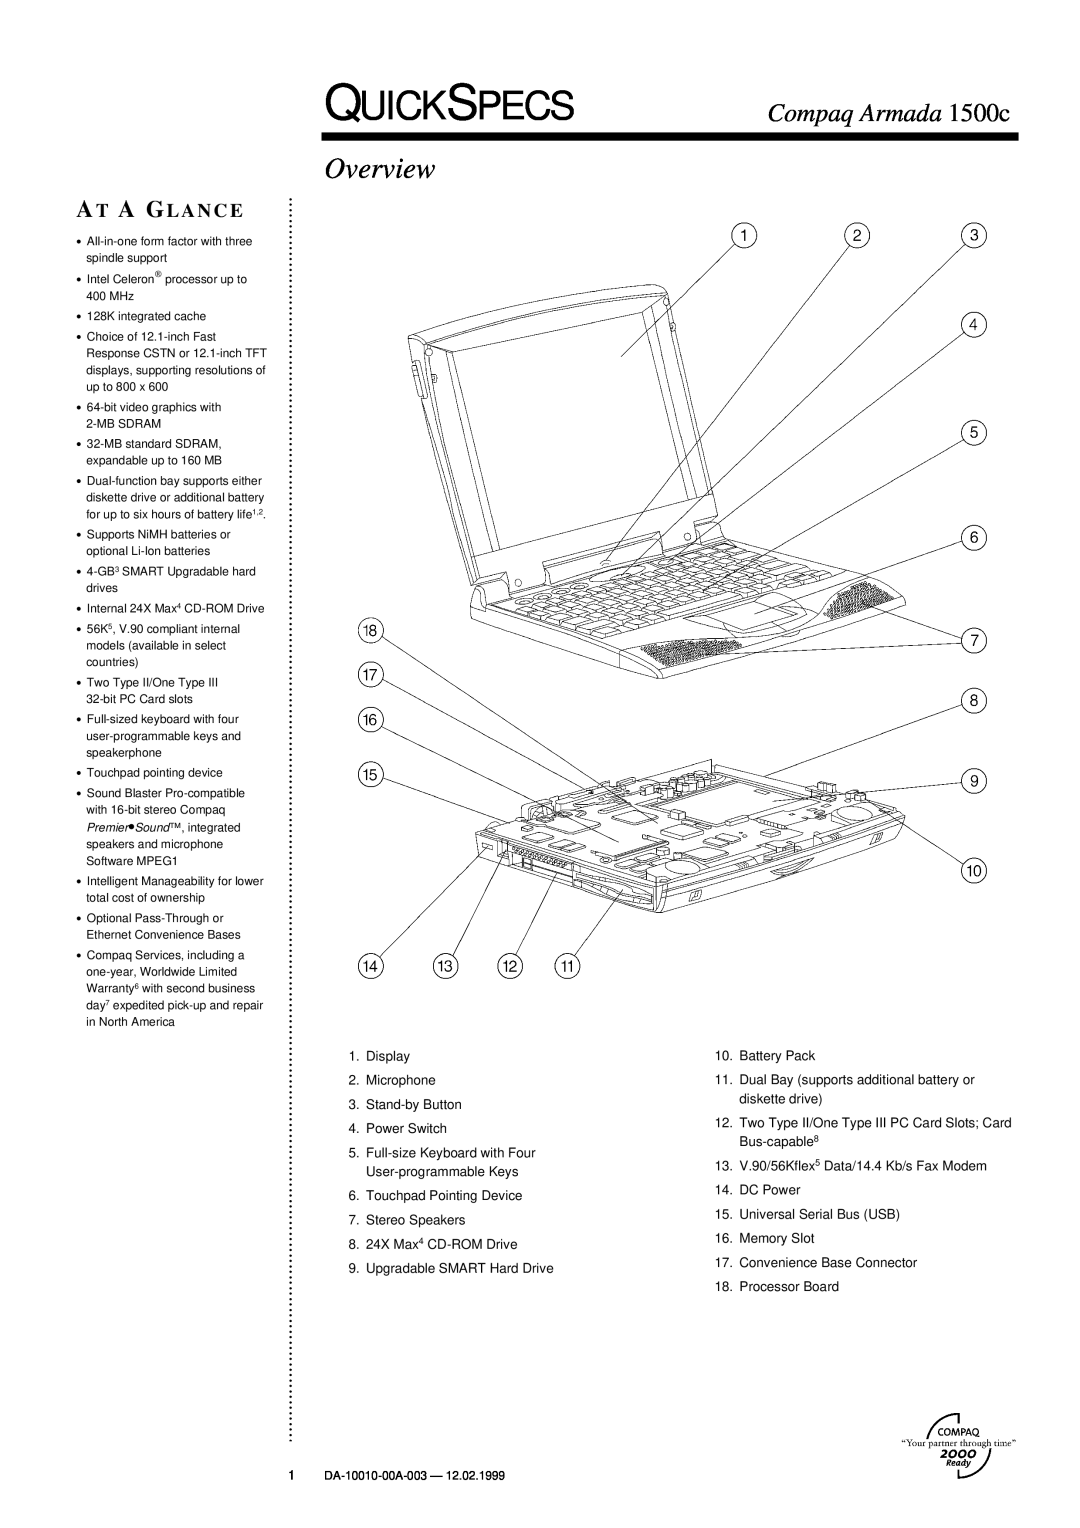 Compaq warranty Quickspecs, Overview, Compaq Armada 1500c, At A Glance 